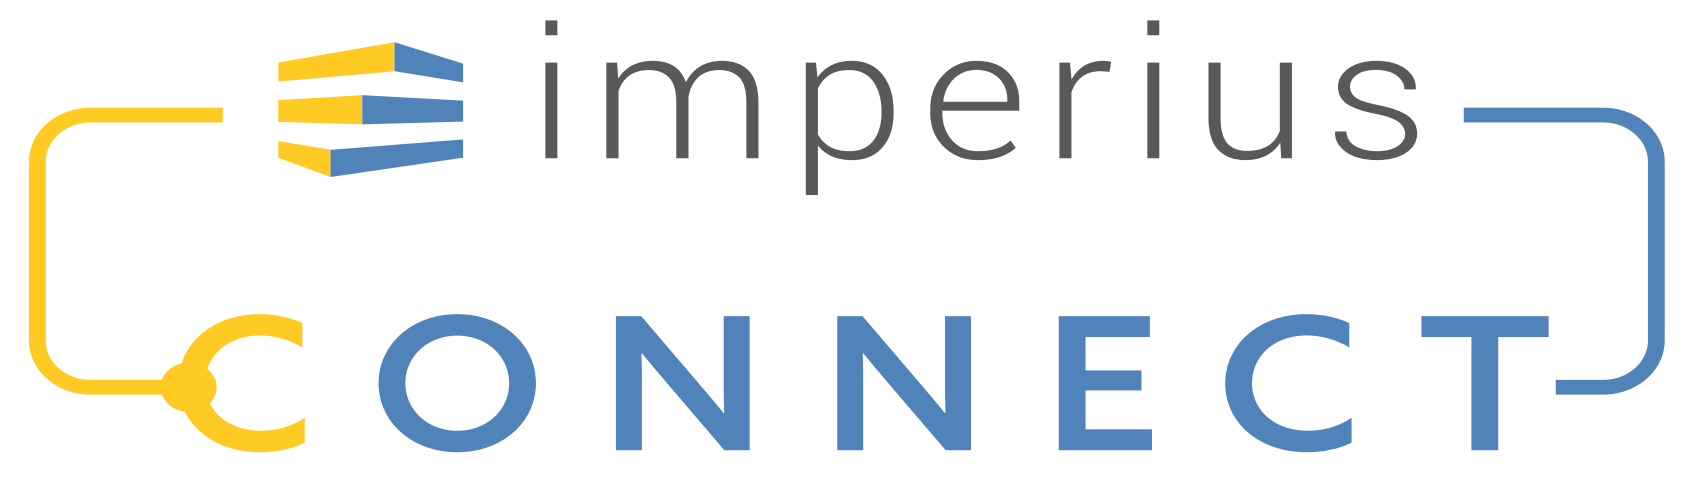 imperius-connect-logo